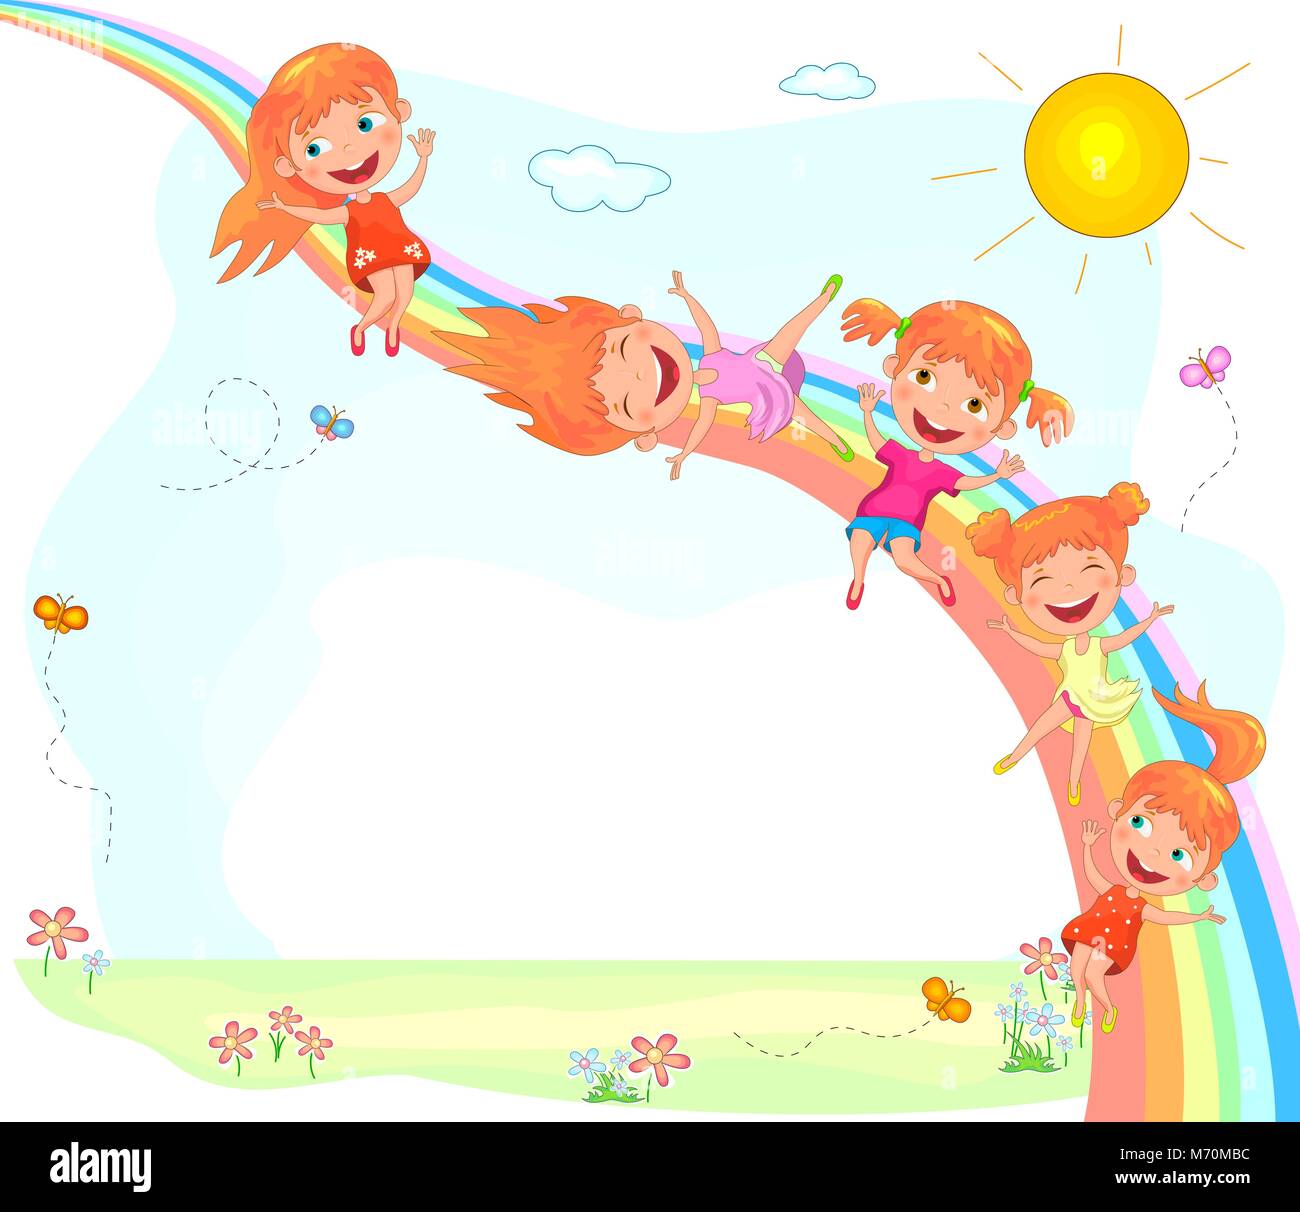 Enfants joyeux et un arc-en-ciel. Peu joyeuse pour descendre l'arc-en-ciel. Funny cartoon enfants jouer sur la nature. Illustration de Vecteur